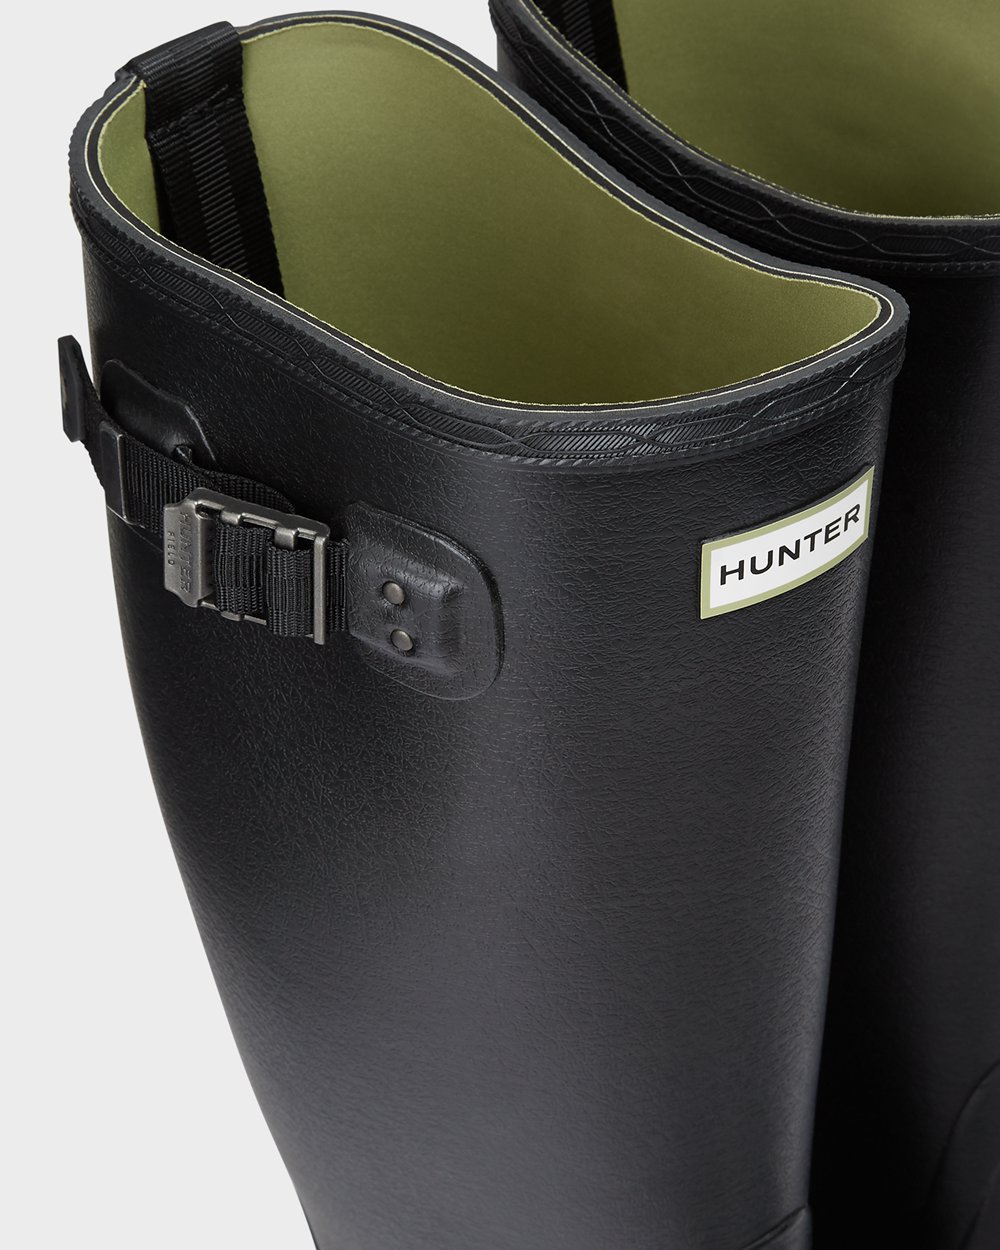 Mens Wide Fit Rain Boots - Hunter Balmoral (34NOTBWXP) - Black